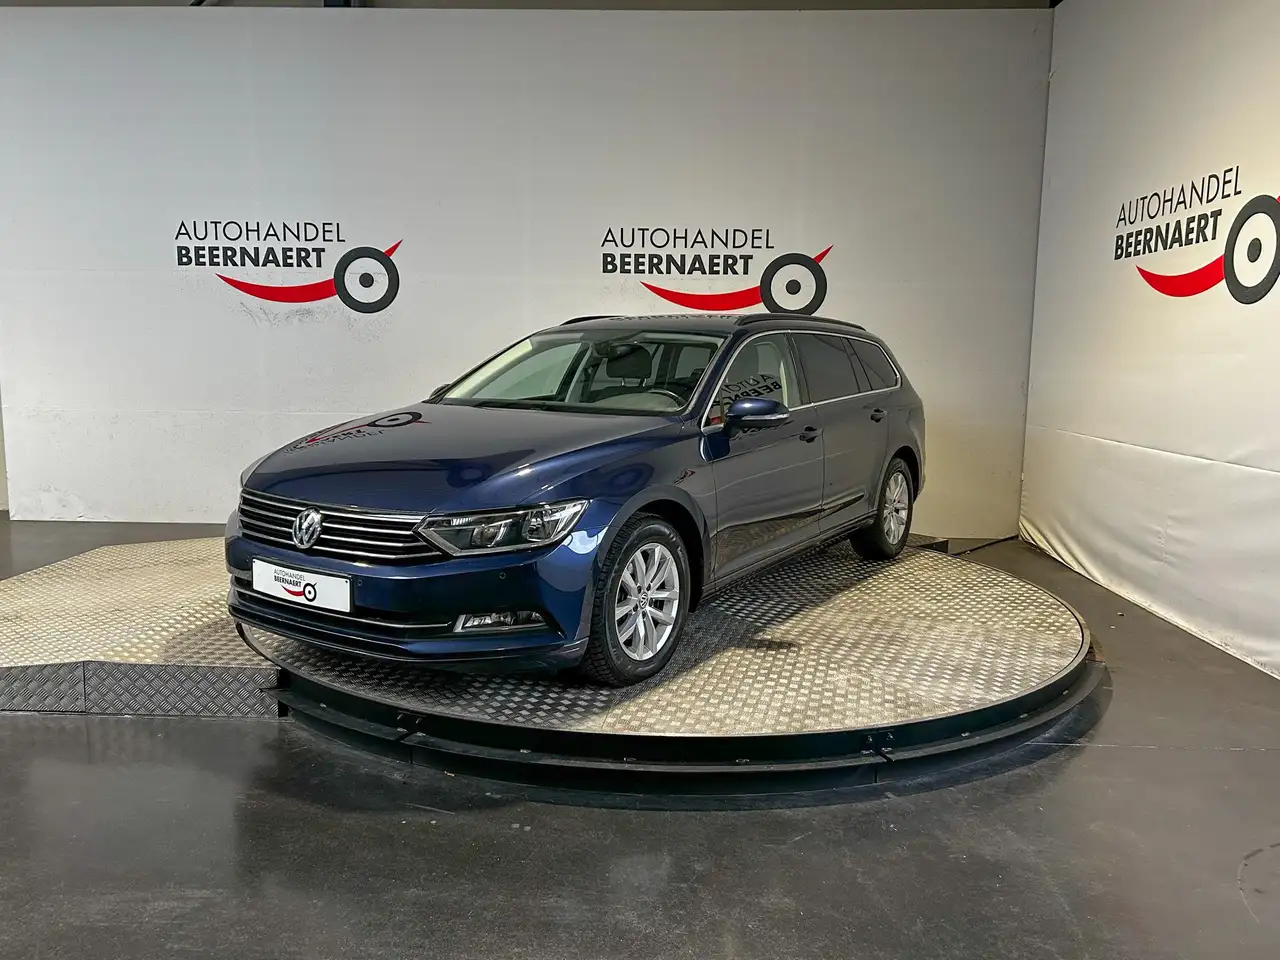 Volkswagen Passat Variant Break in Blauw tweedehands in Handzame voor € 15.995,-